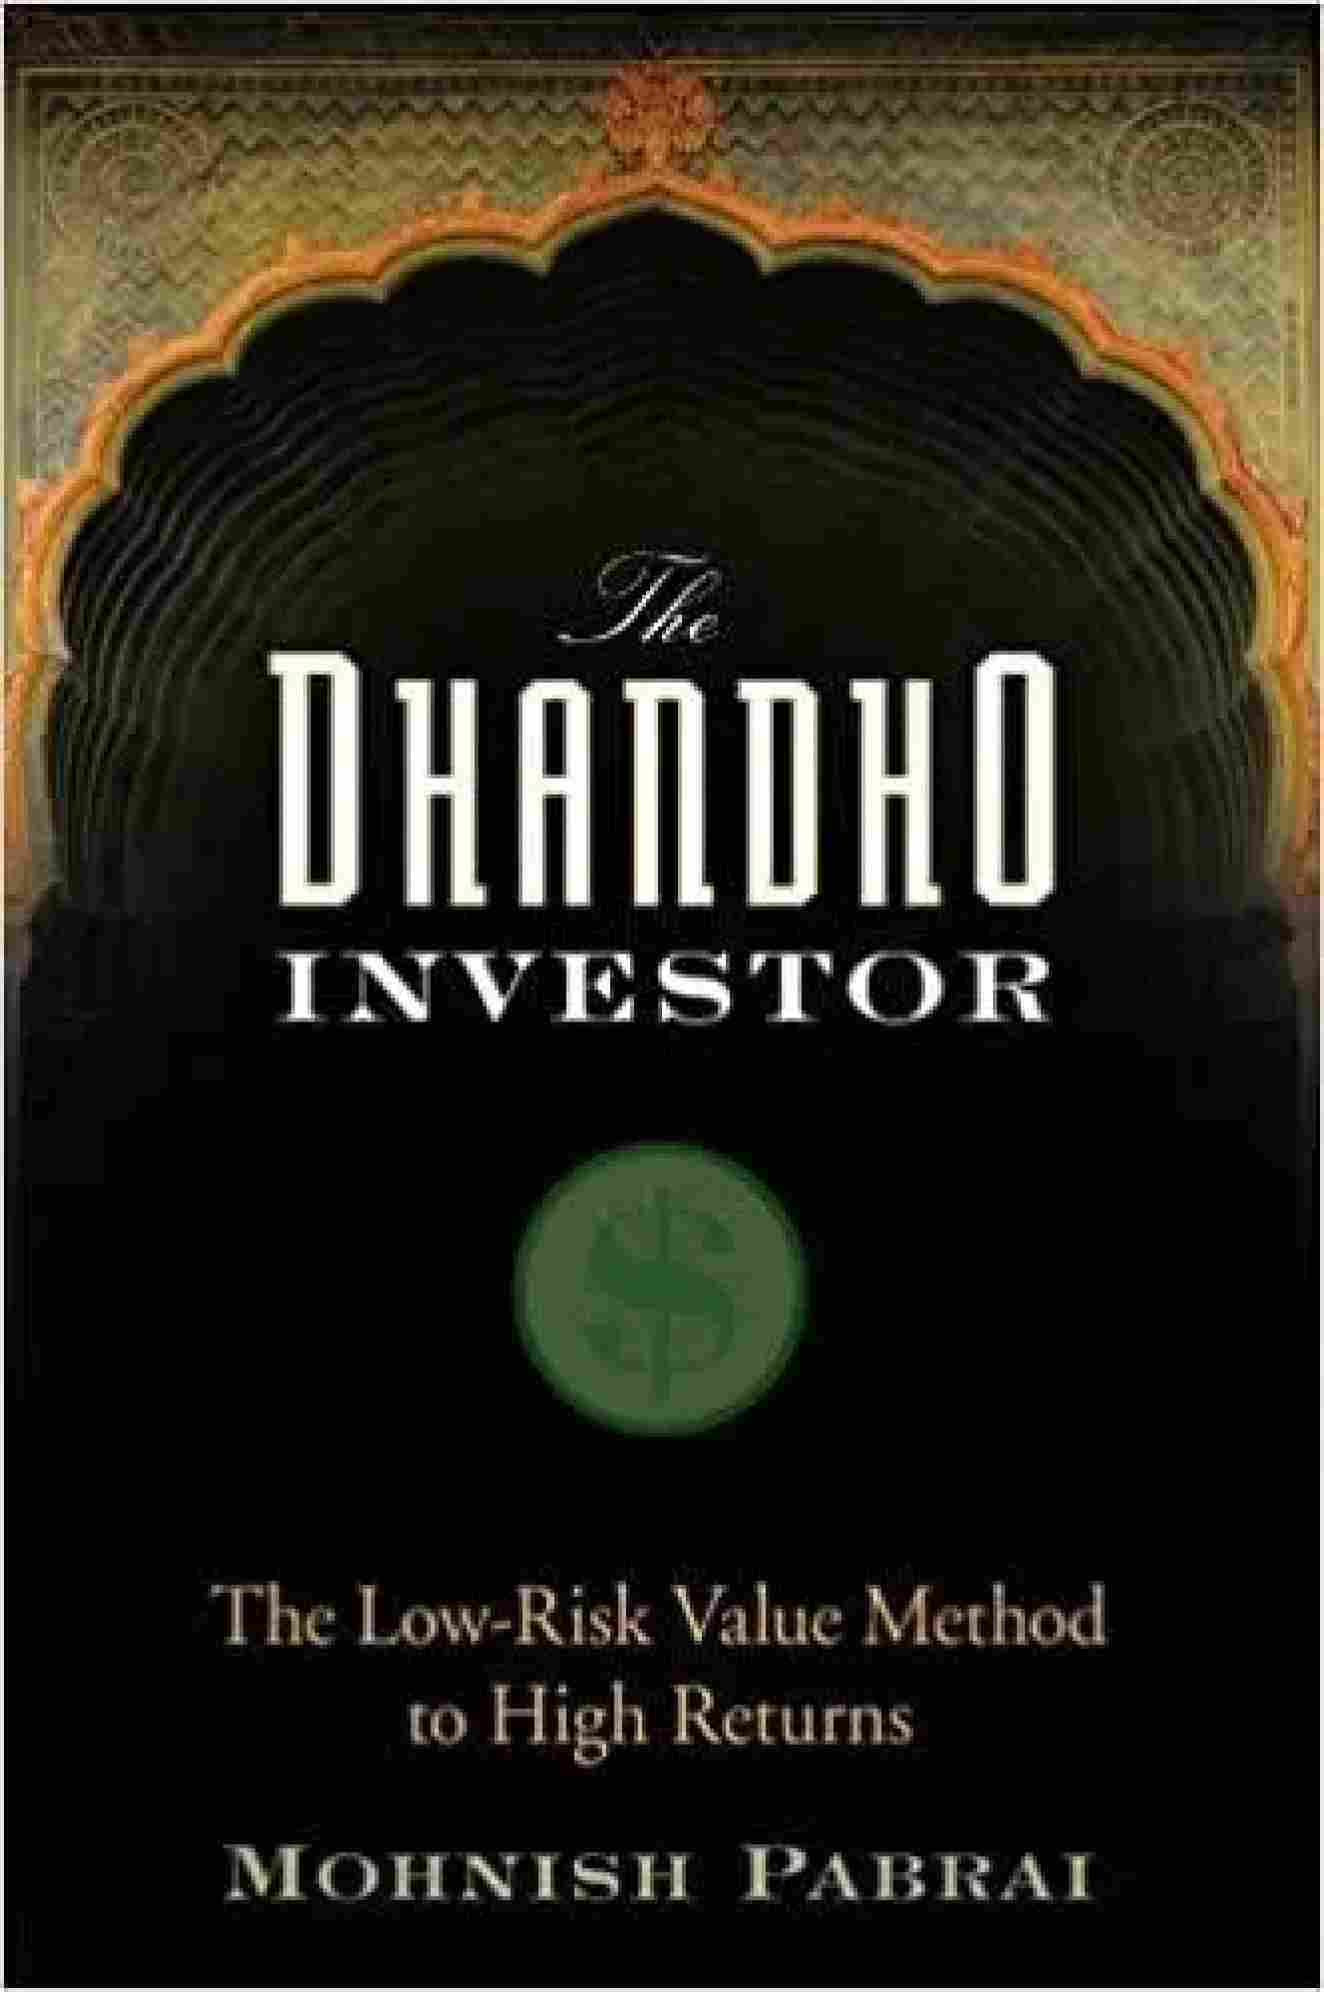 The Dhandho Investor (Hardcover) - Mohnish Pabrai - 99BooksStore